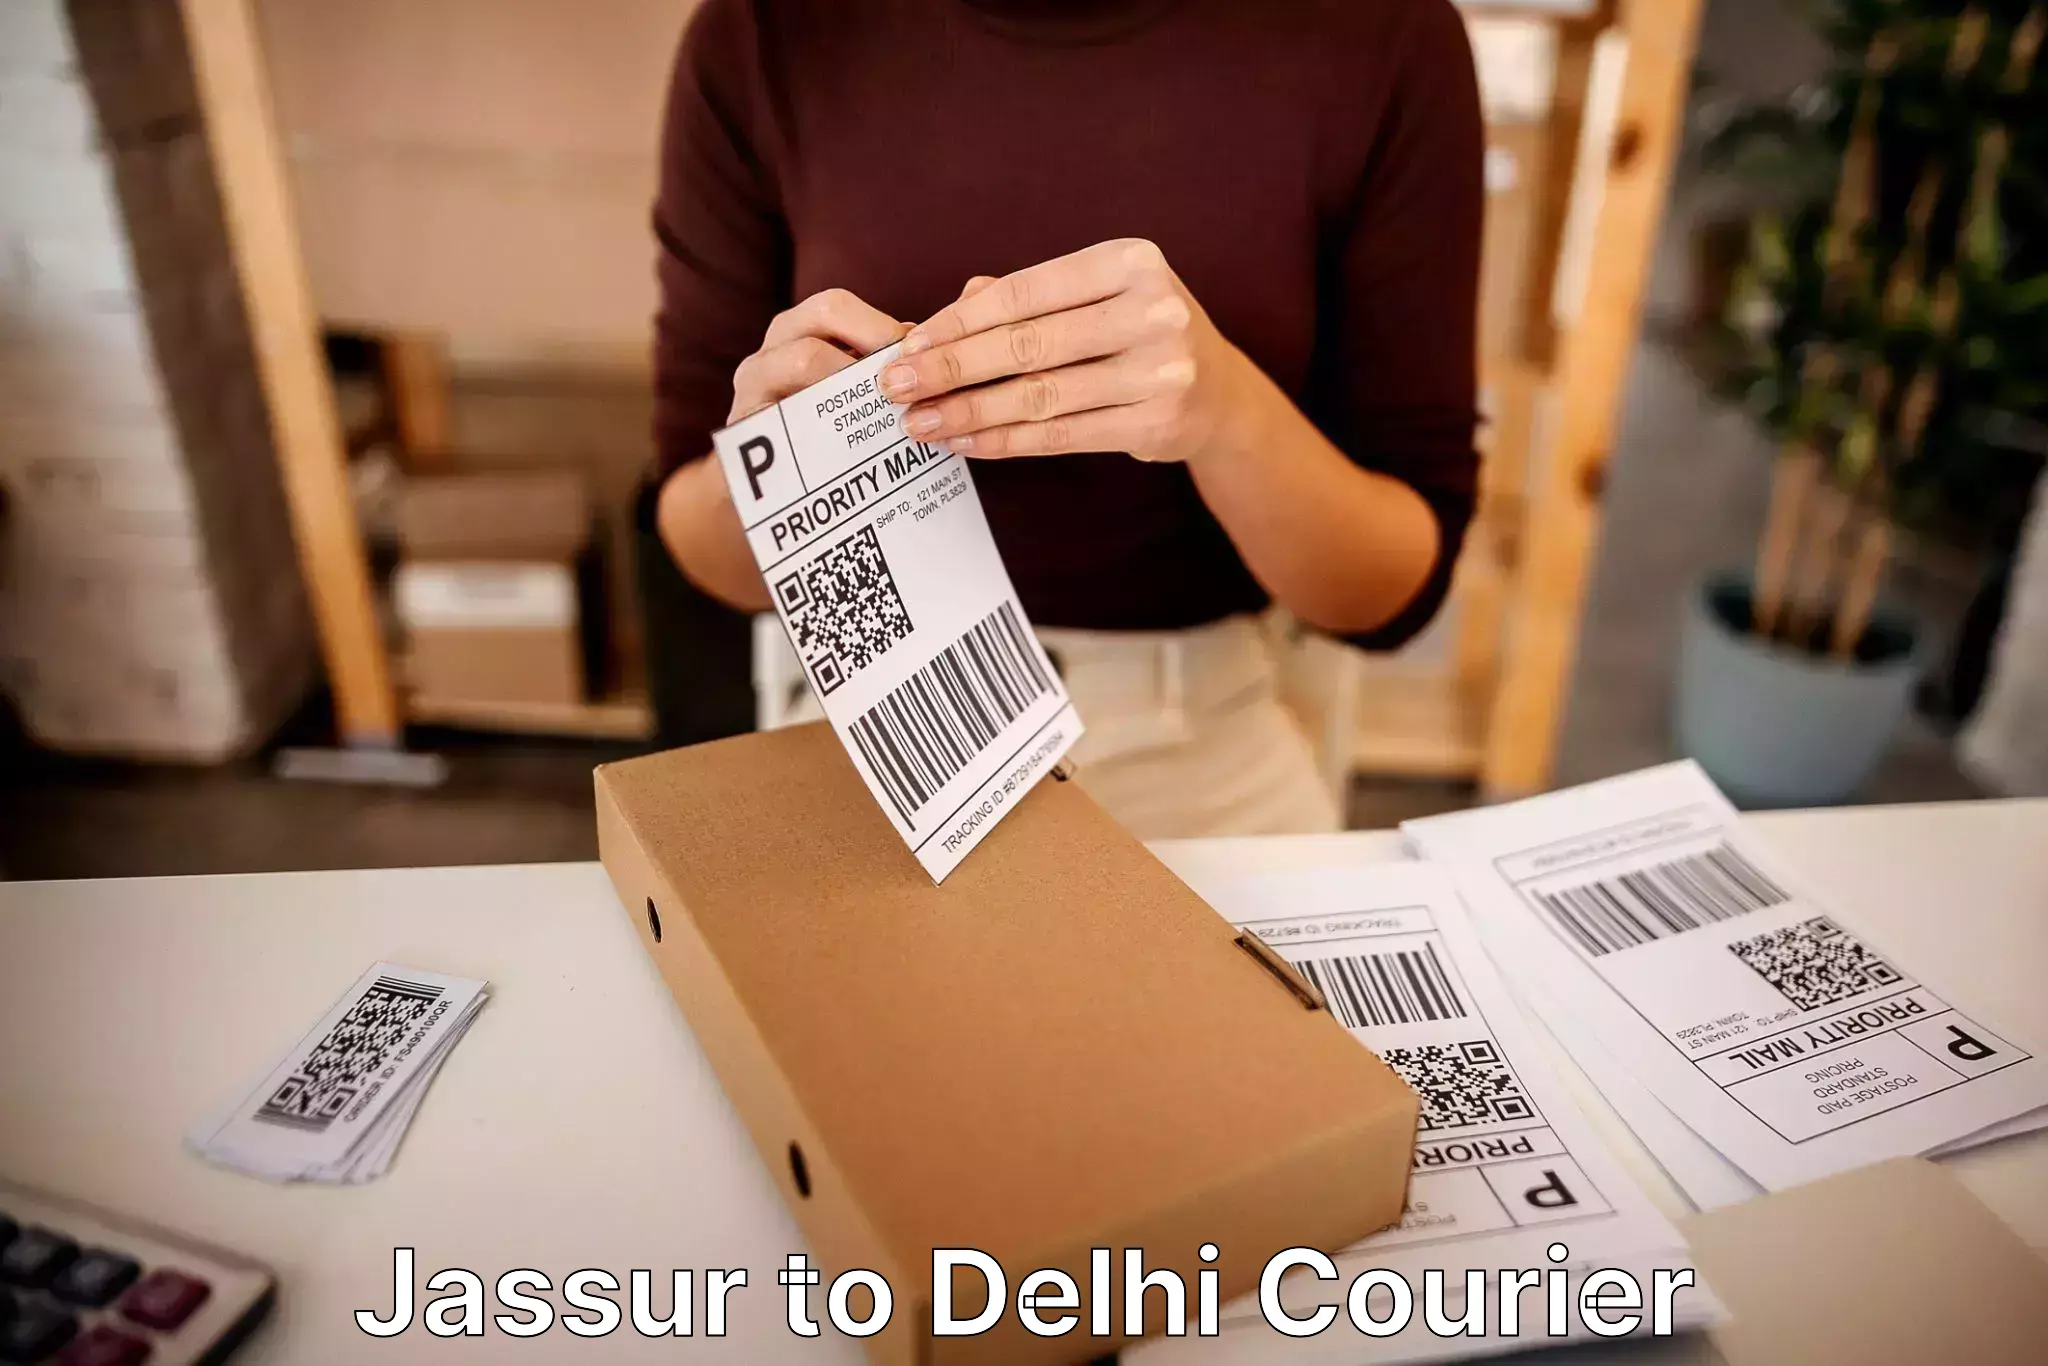 Furniture delivery service Jassur to Sansad Marg